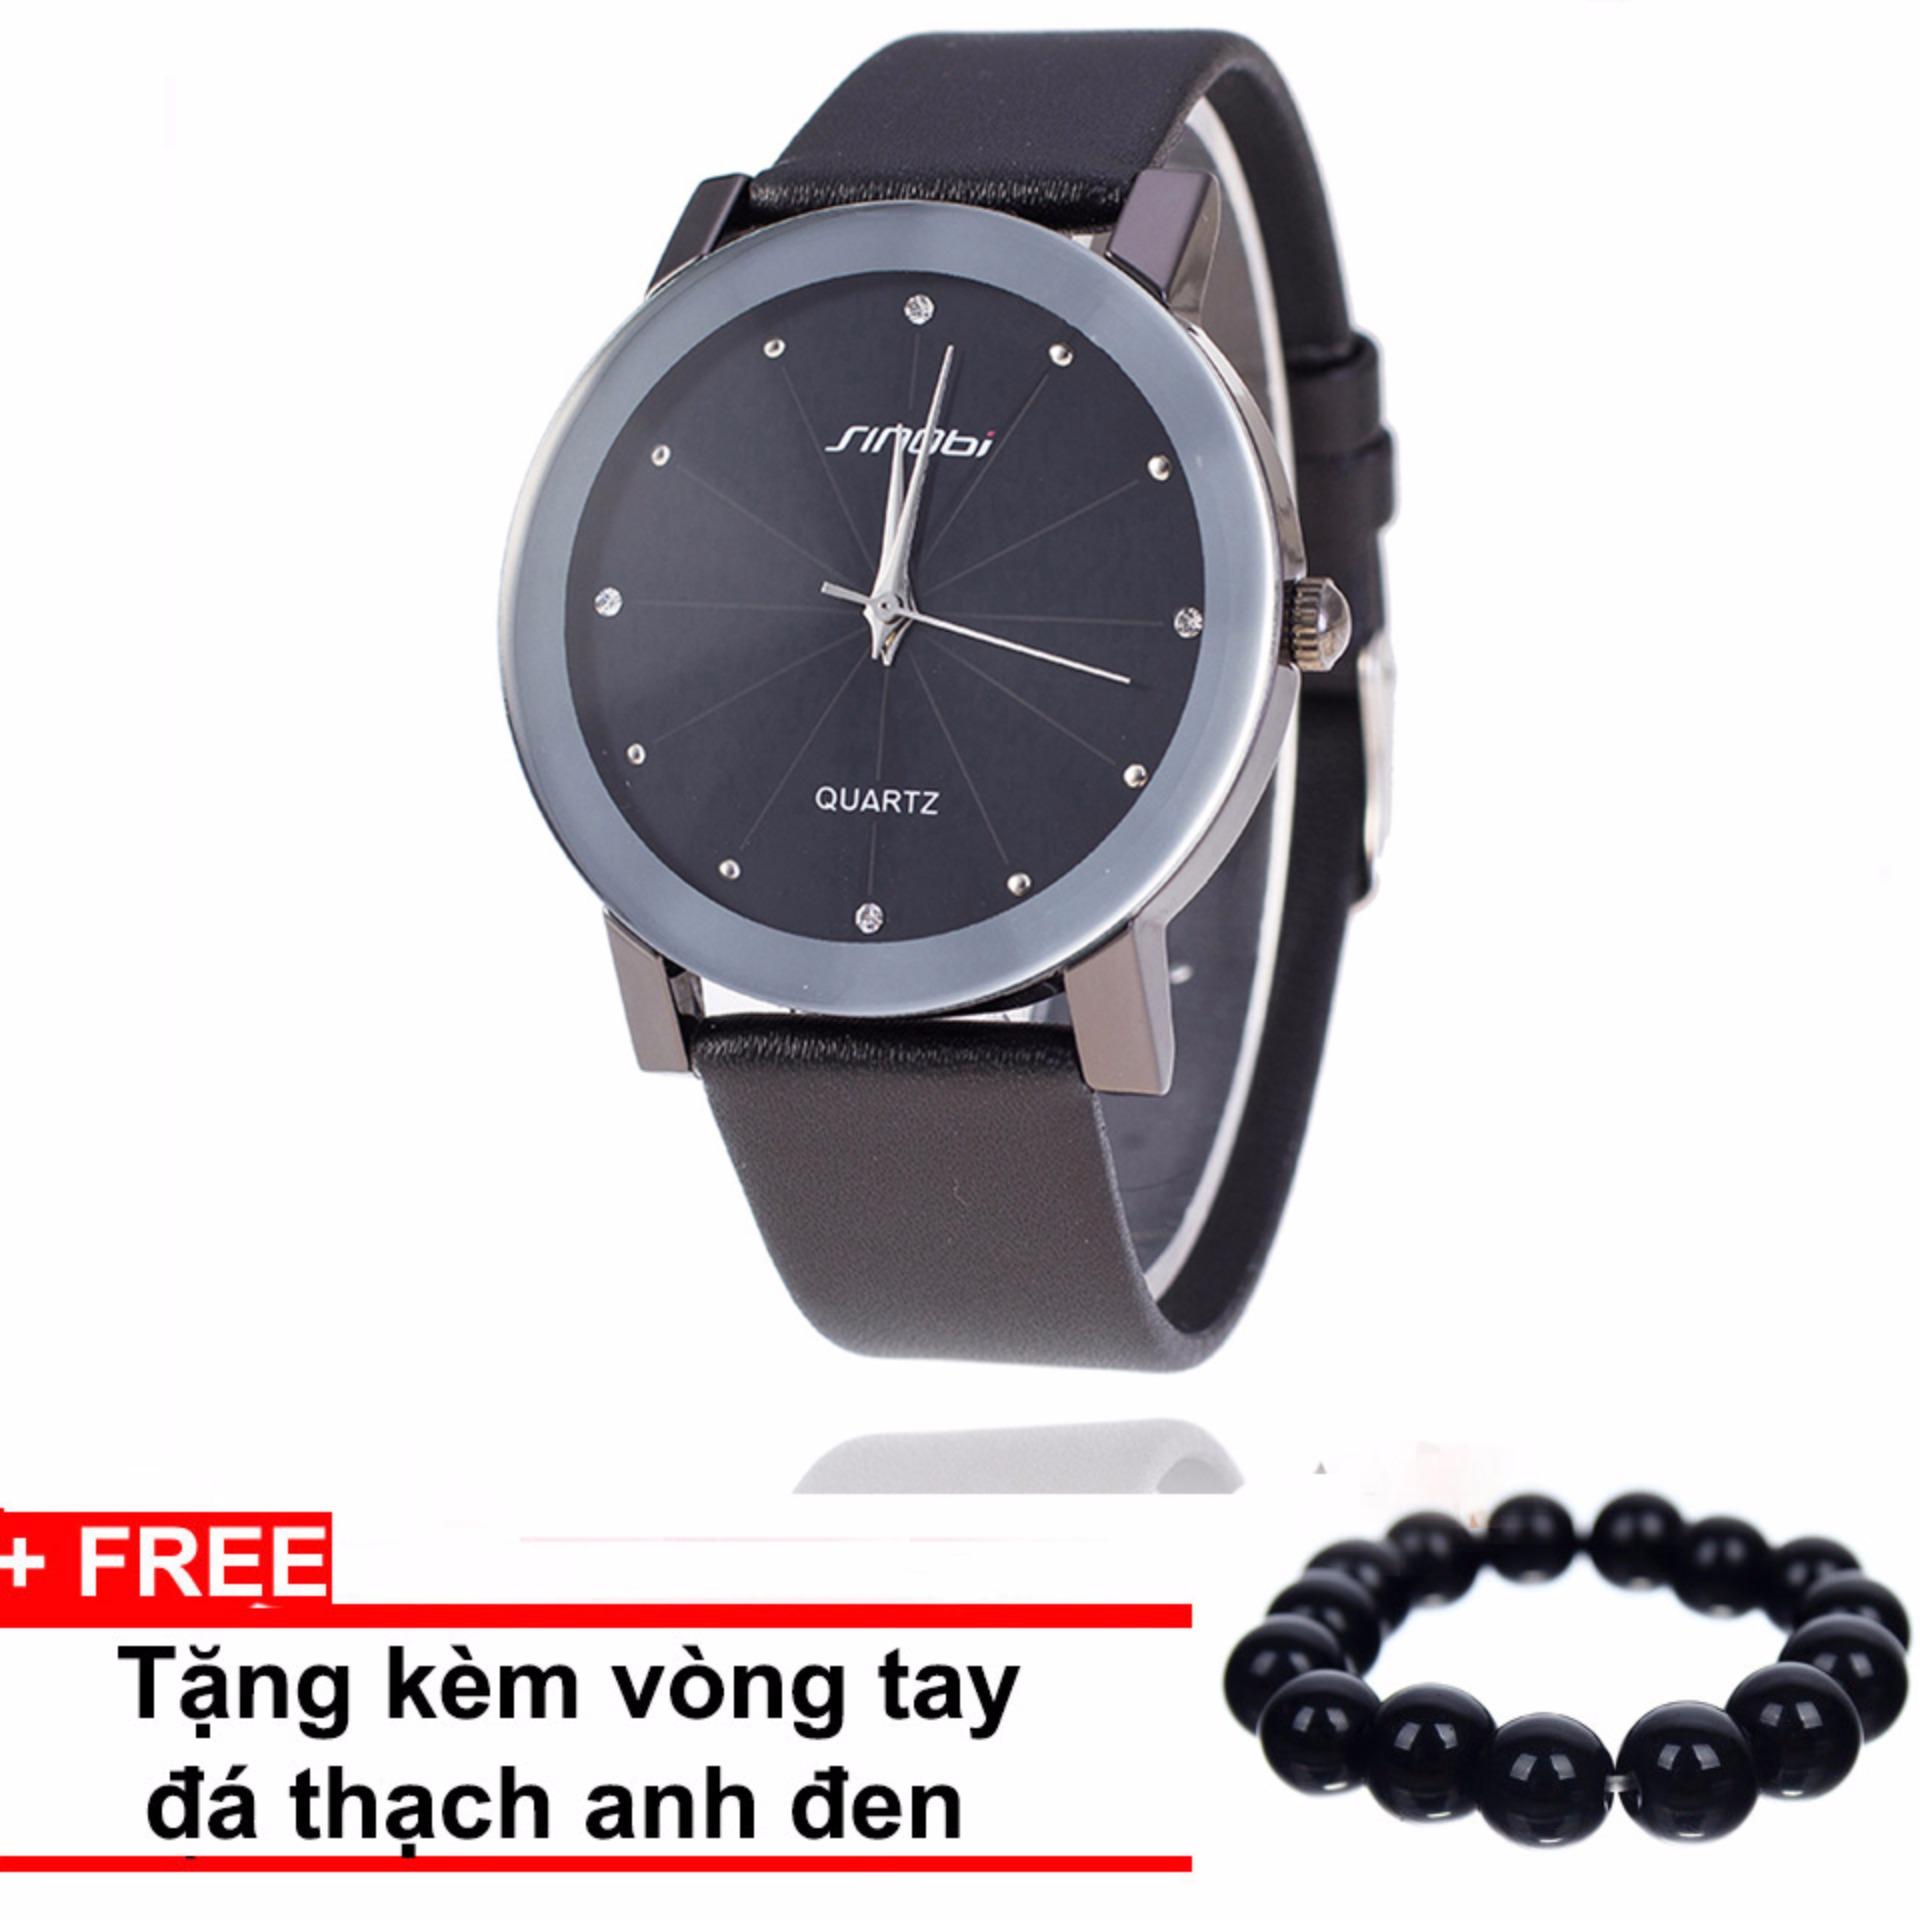 Đồng hồ nam dây da SINOBI WM11 (Đen) +Tặng kèm vòng tay thạch anh đen